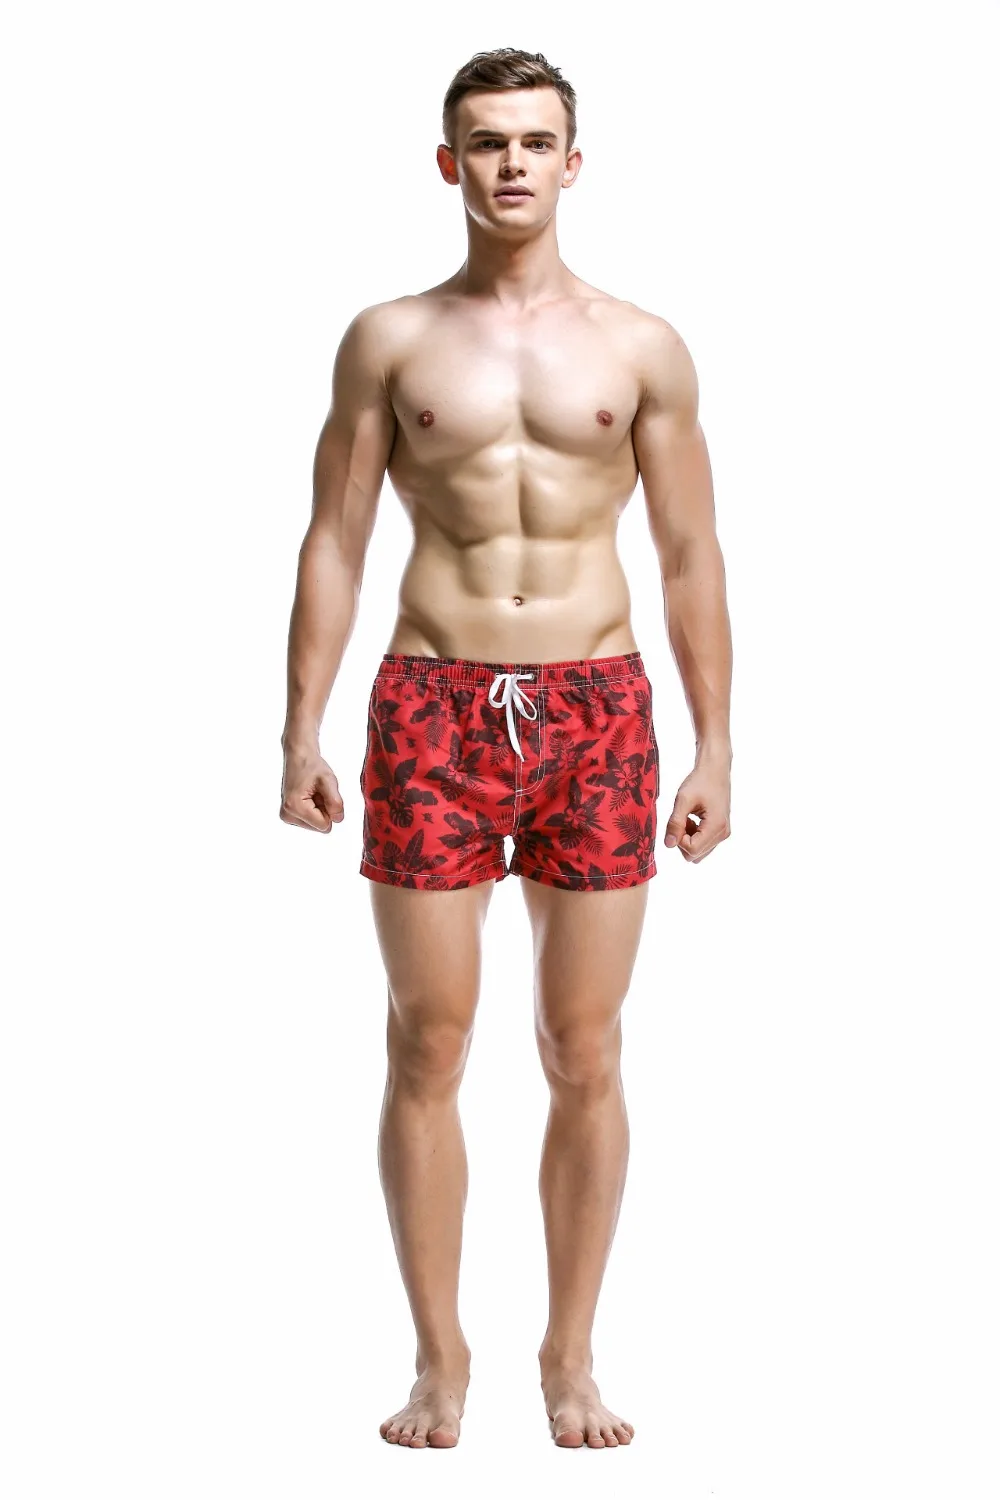 SEOBEAN Красный Лист пляжные шорты Мужская купальная одежда, шорты сексуальные Sunga Masculina мужские плавки мужские трусы спортивные мужские купальники 366